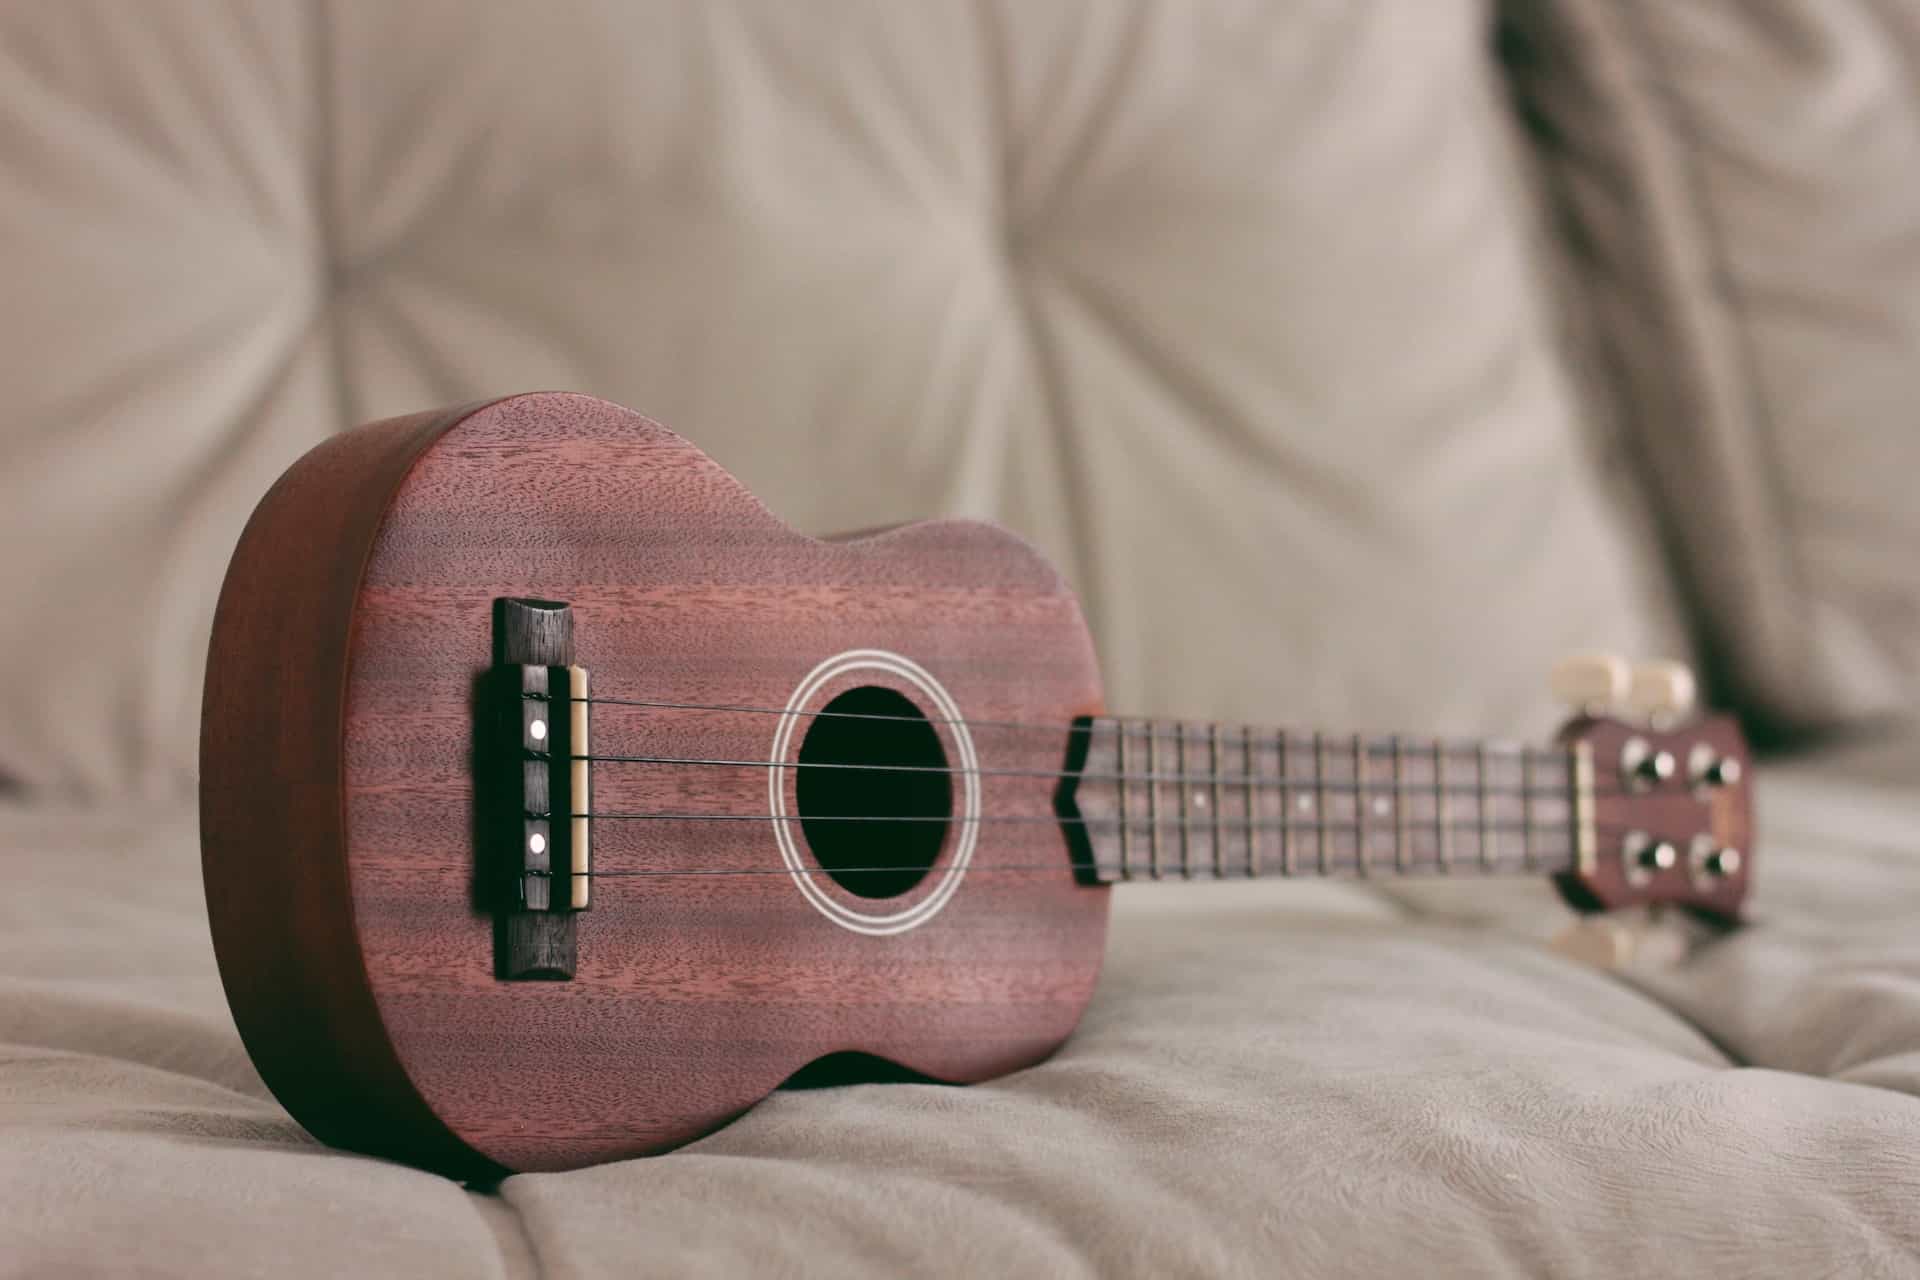 Gra na ukulele. Jak zacząć i czy to trudne?